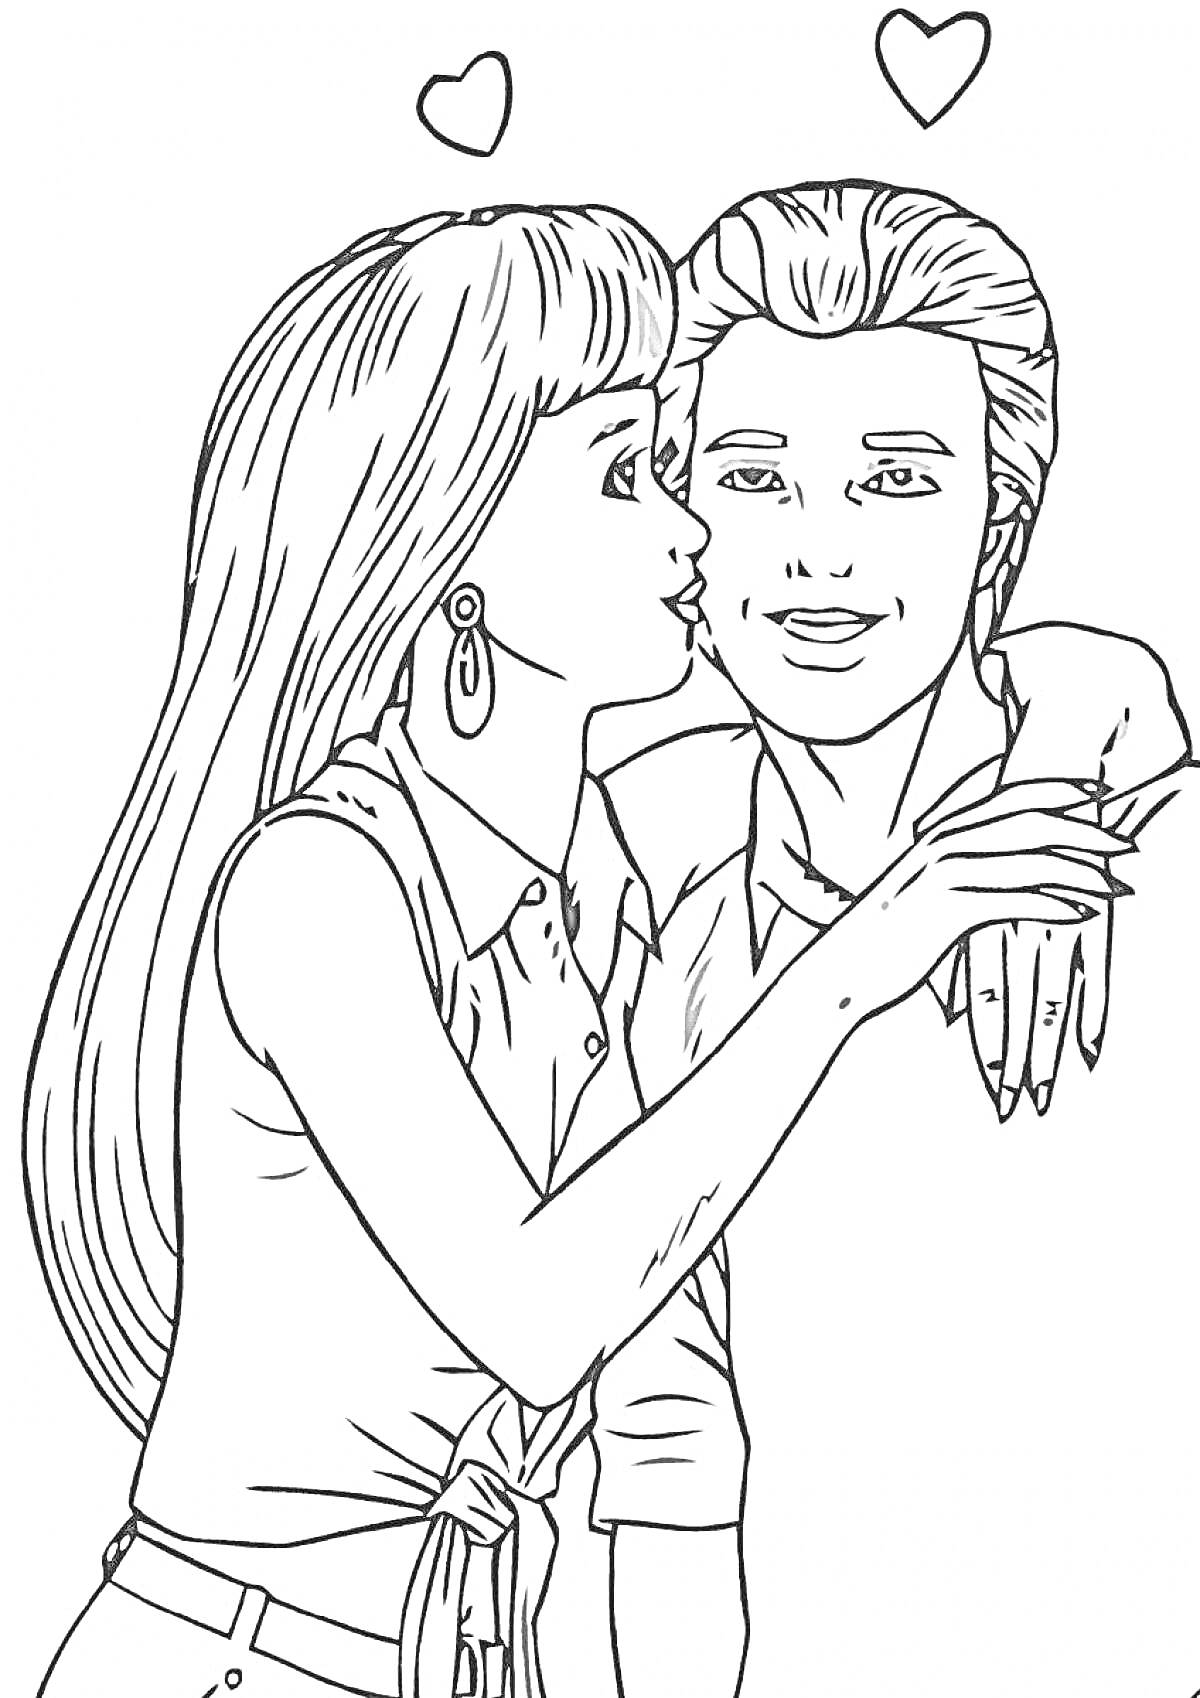 Раскраска Барби целует Кена с сердечками на фоне